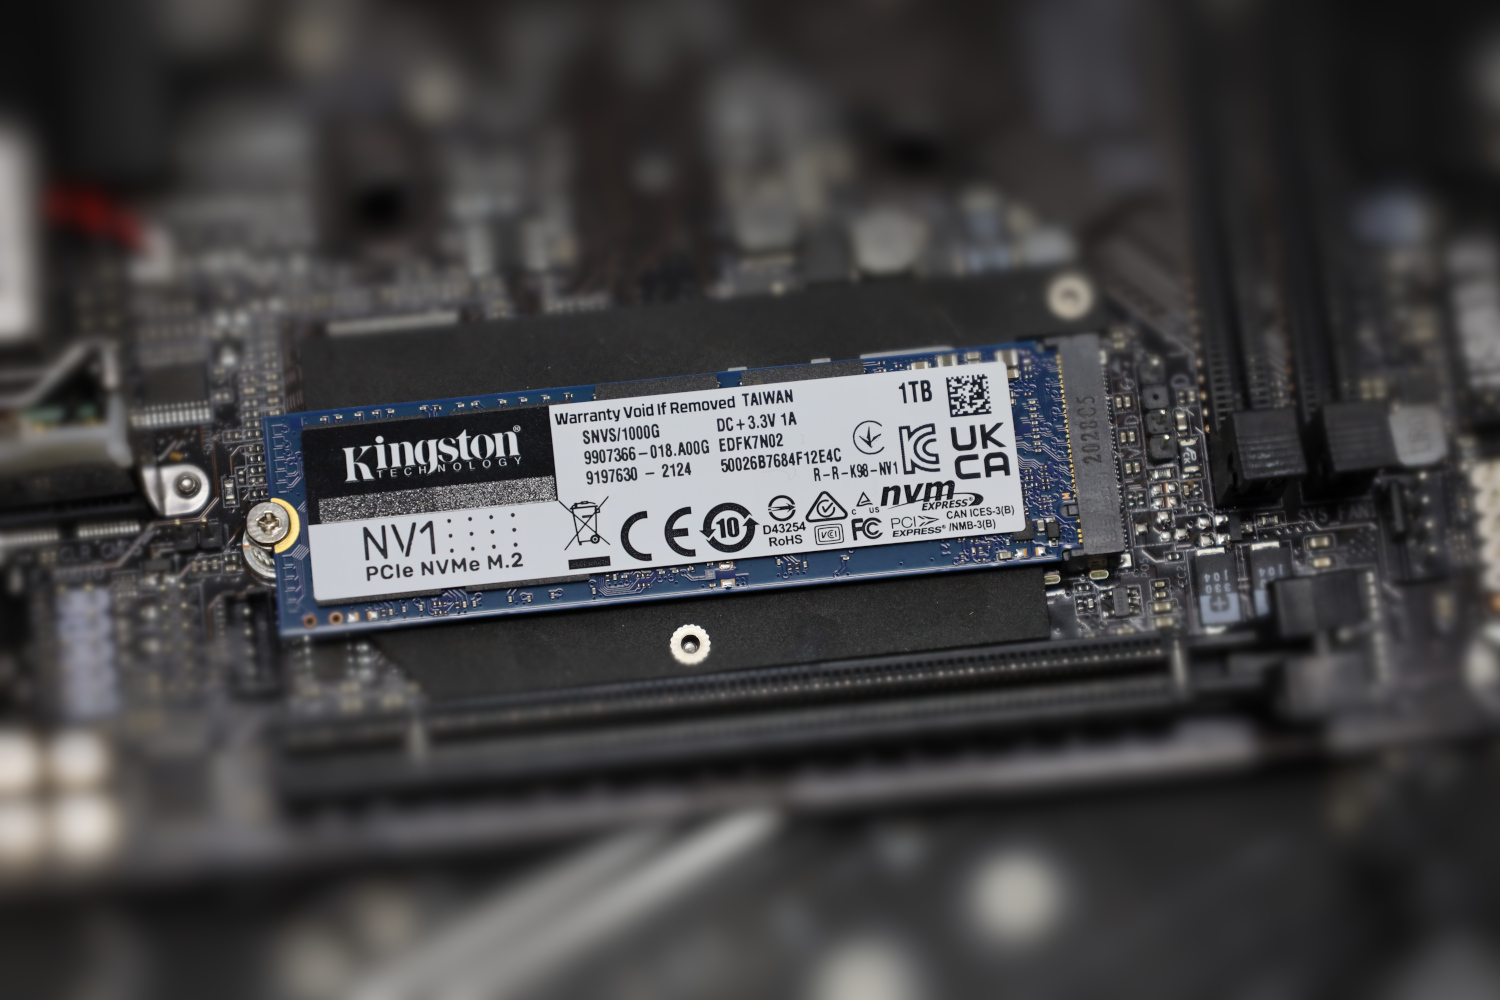 Kingston NV1 1TB NVMe SSD Review - ServeTheHome